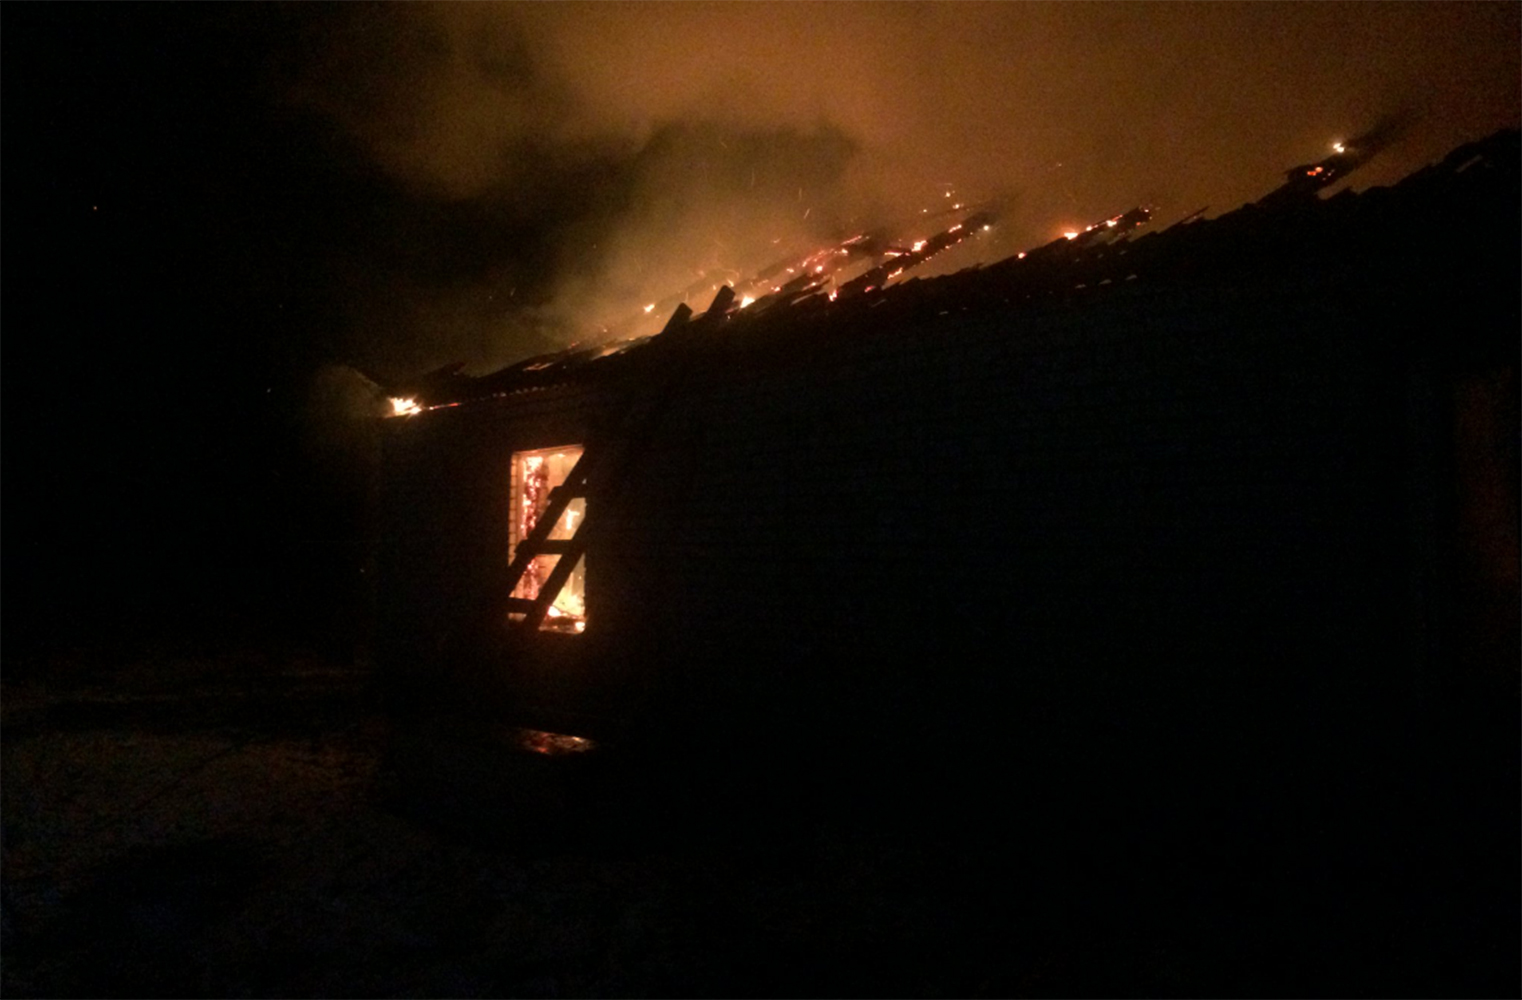 В МЧС рассказали подробности сильного пожара в Ростове Великом